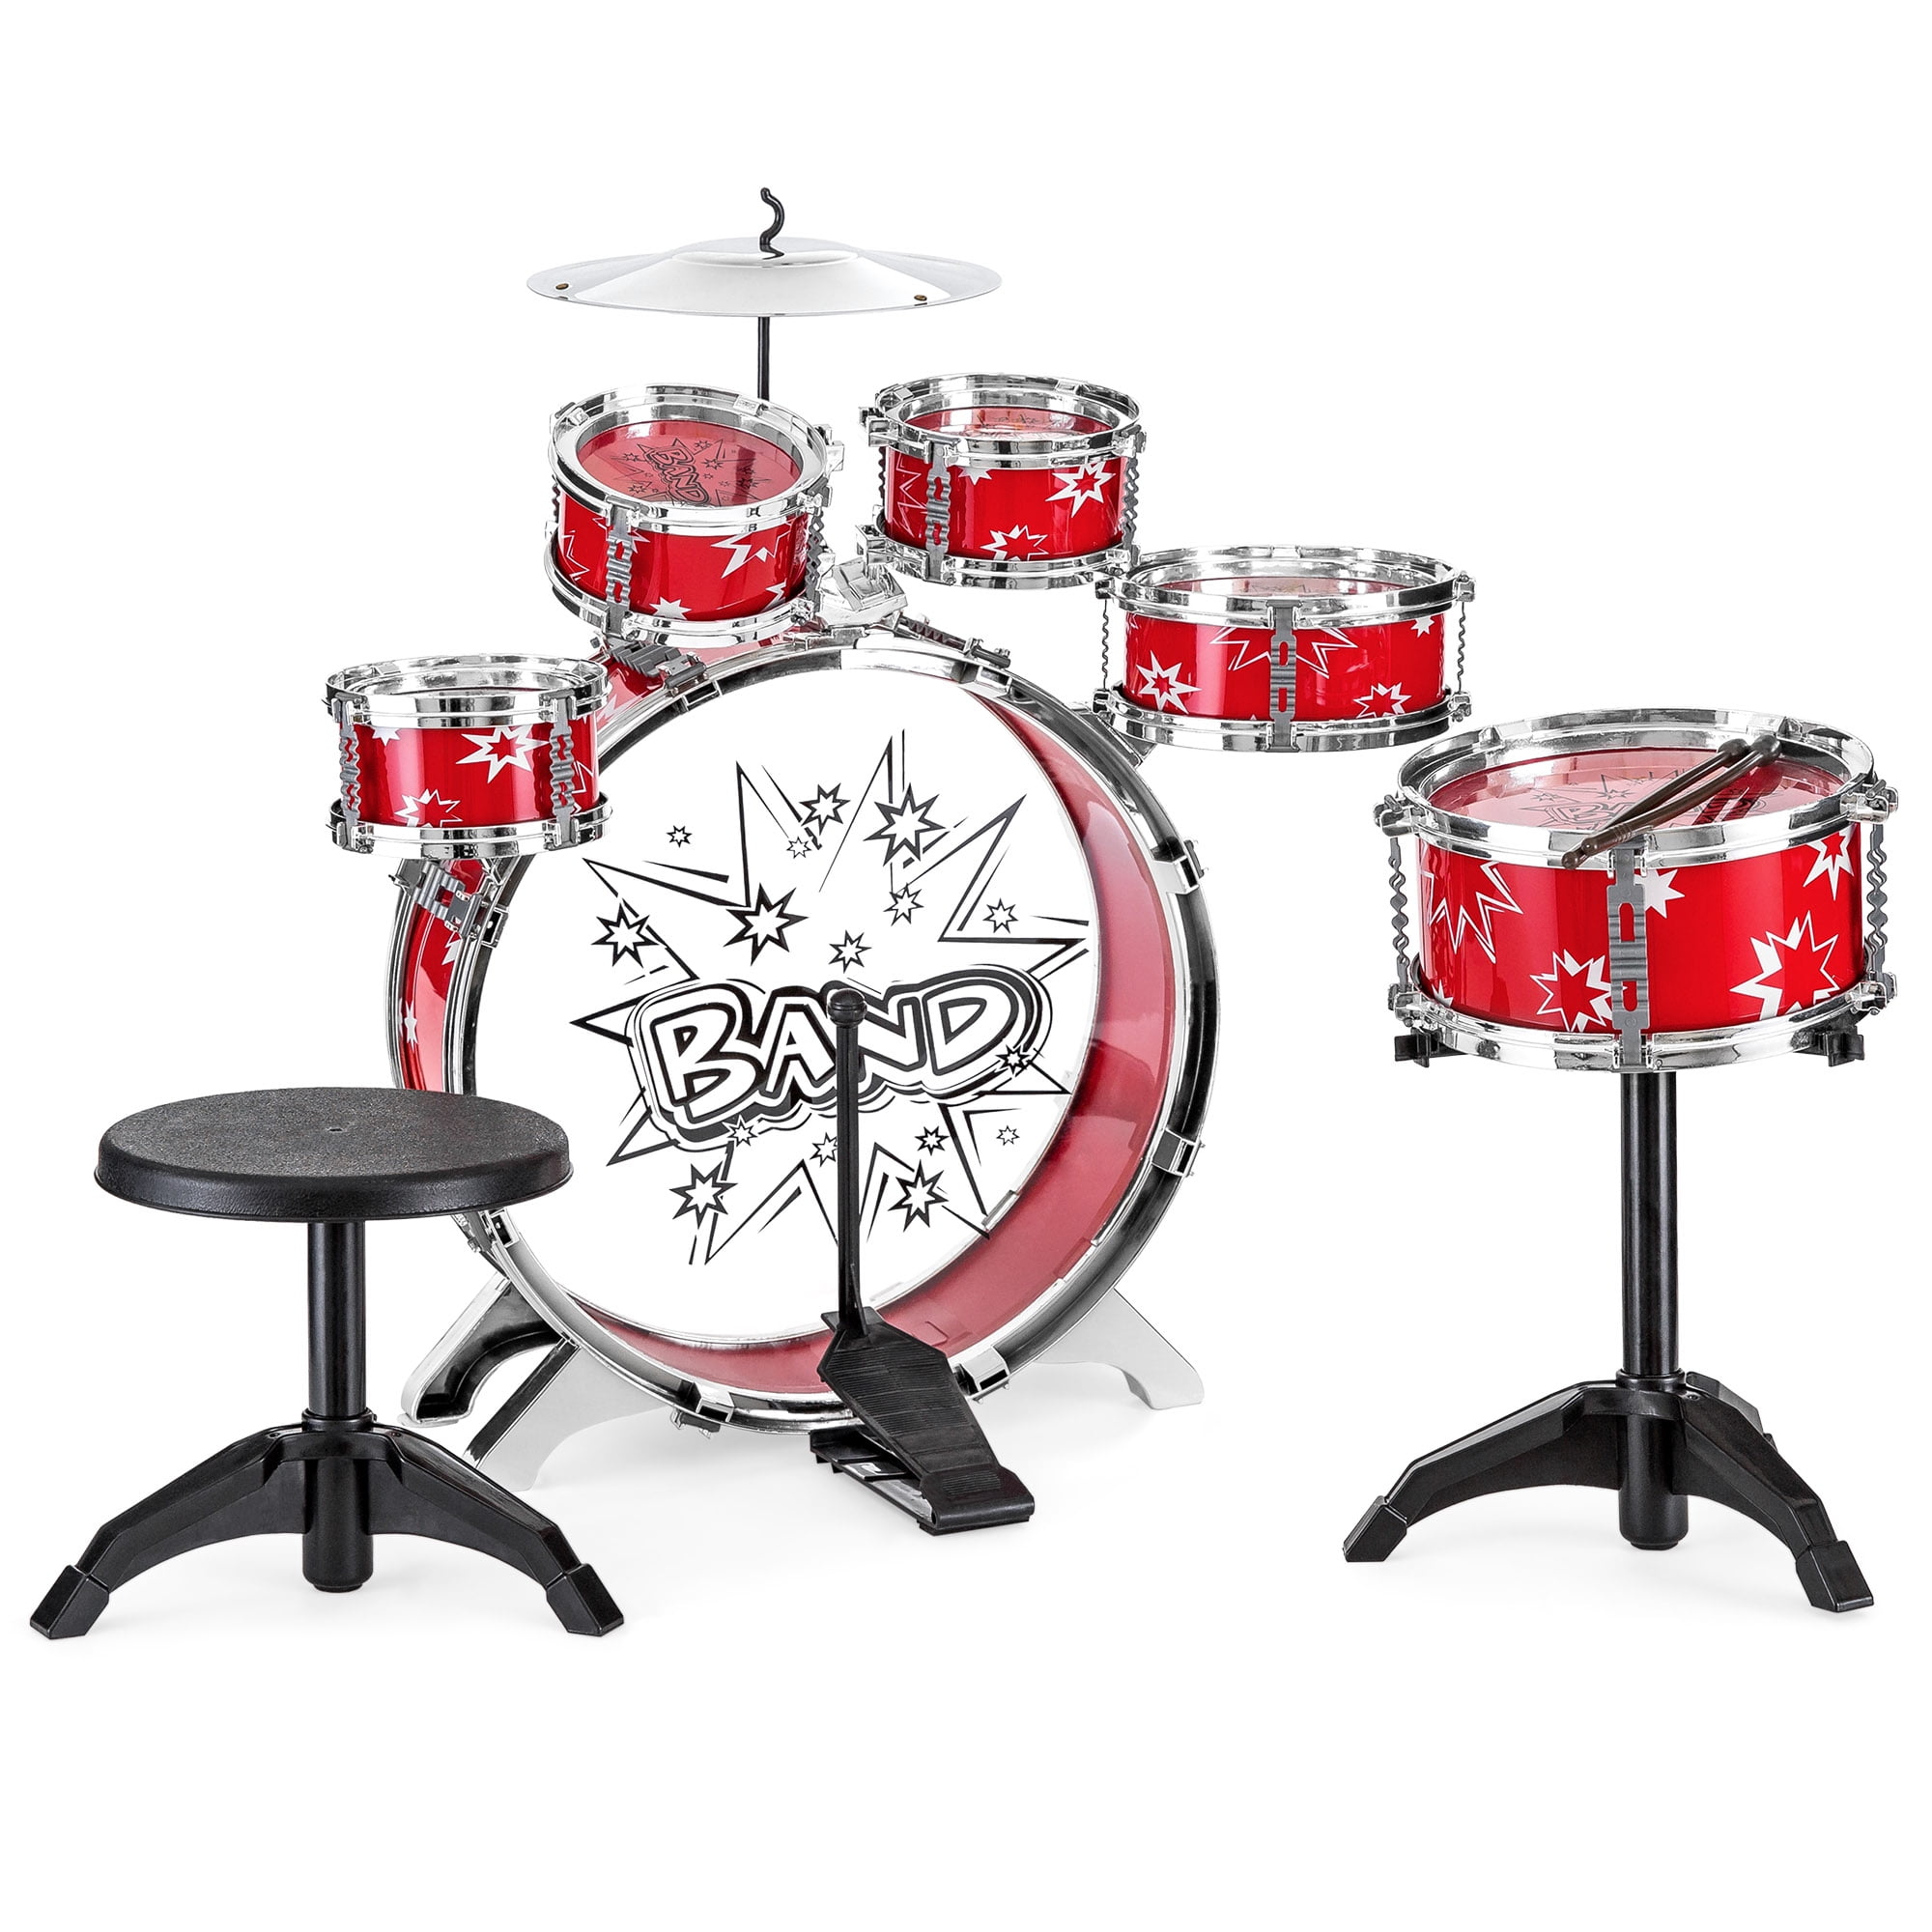 24 Inch Kids Drum Kit 9 Pieces Drum Set for Kids Jazz Drum Set with Drum Throne for 3-5 Years Old Children Boys Girls Blue 